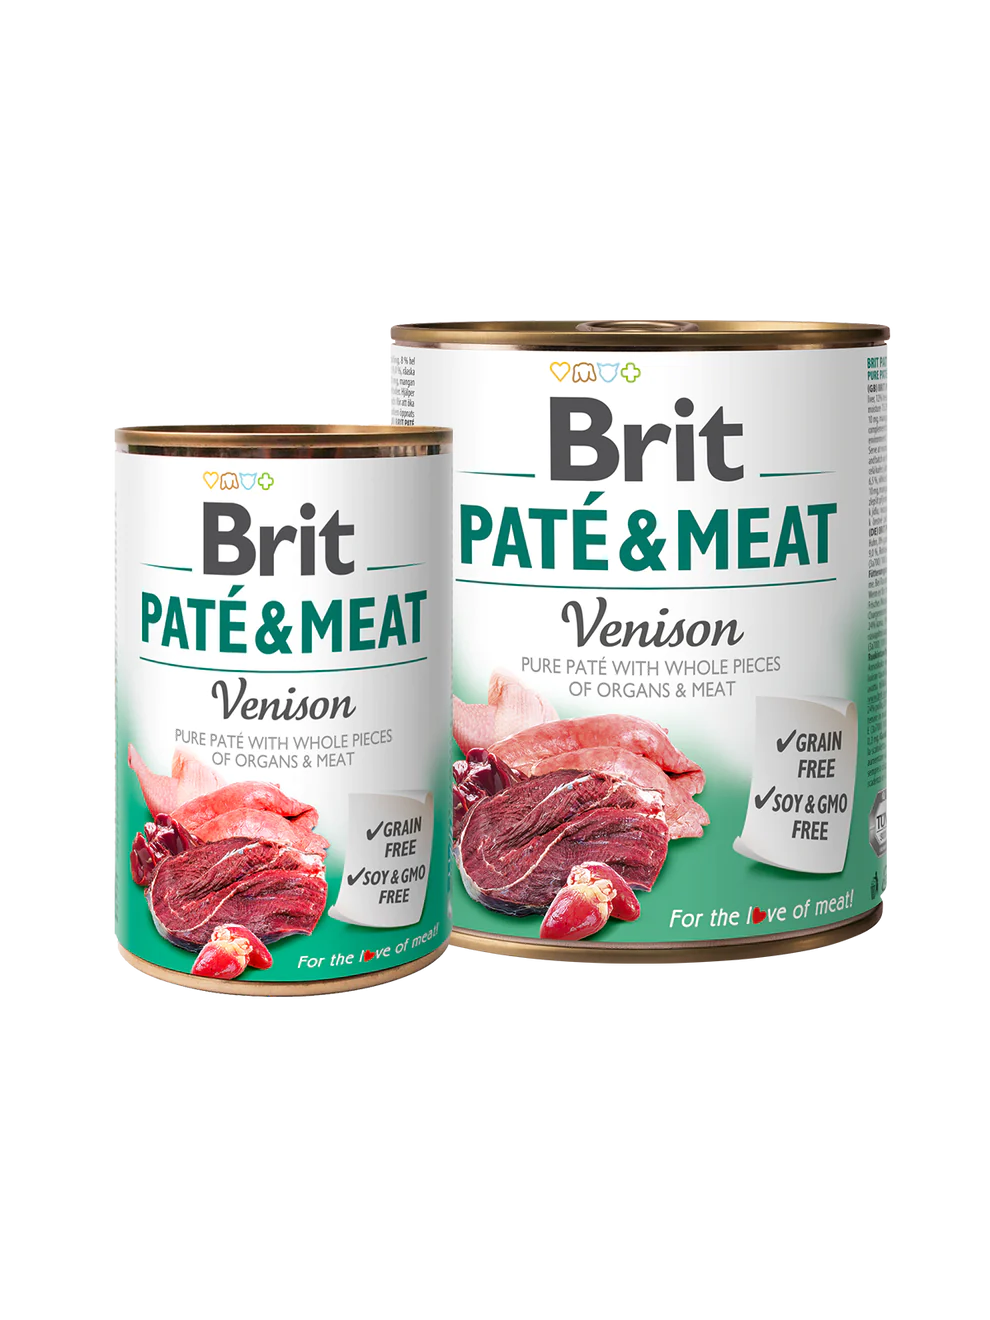 BRIT PATÉ & MEAT VENISON 6 pack of 400g